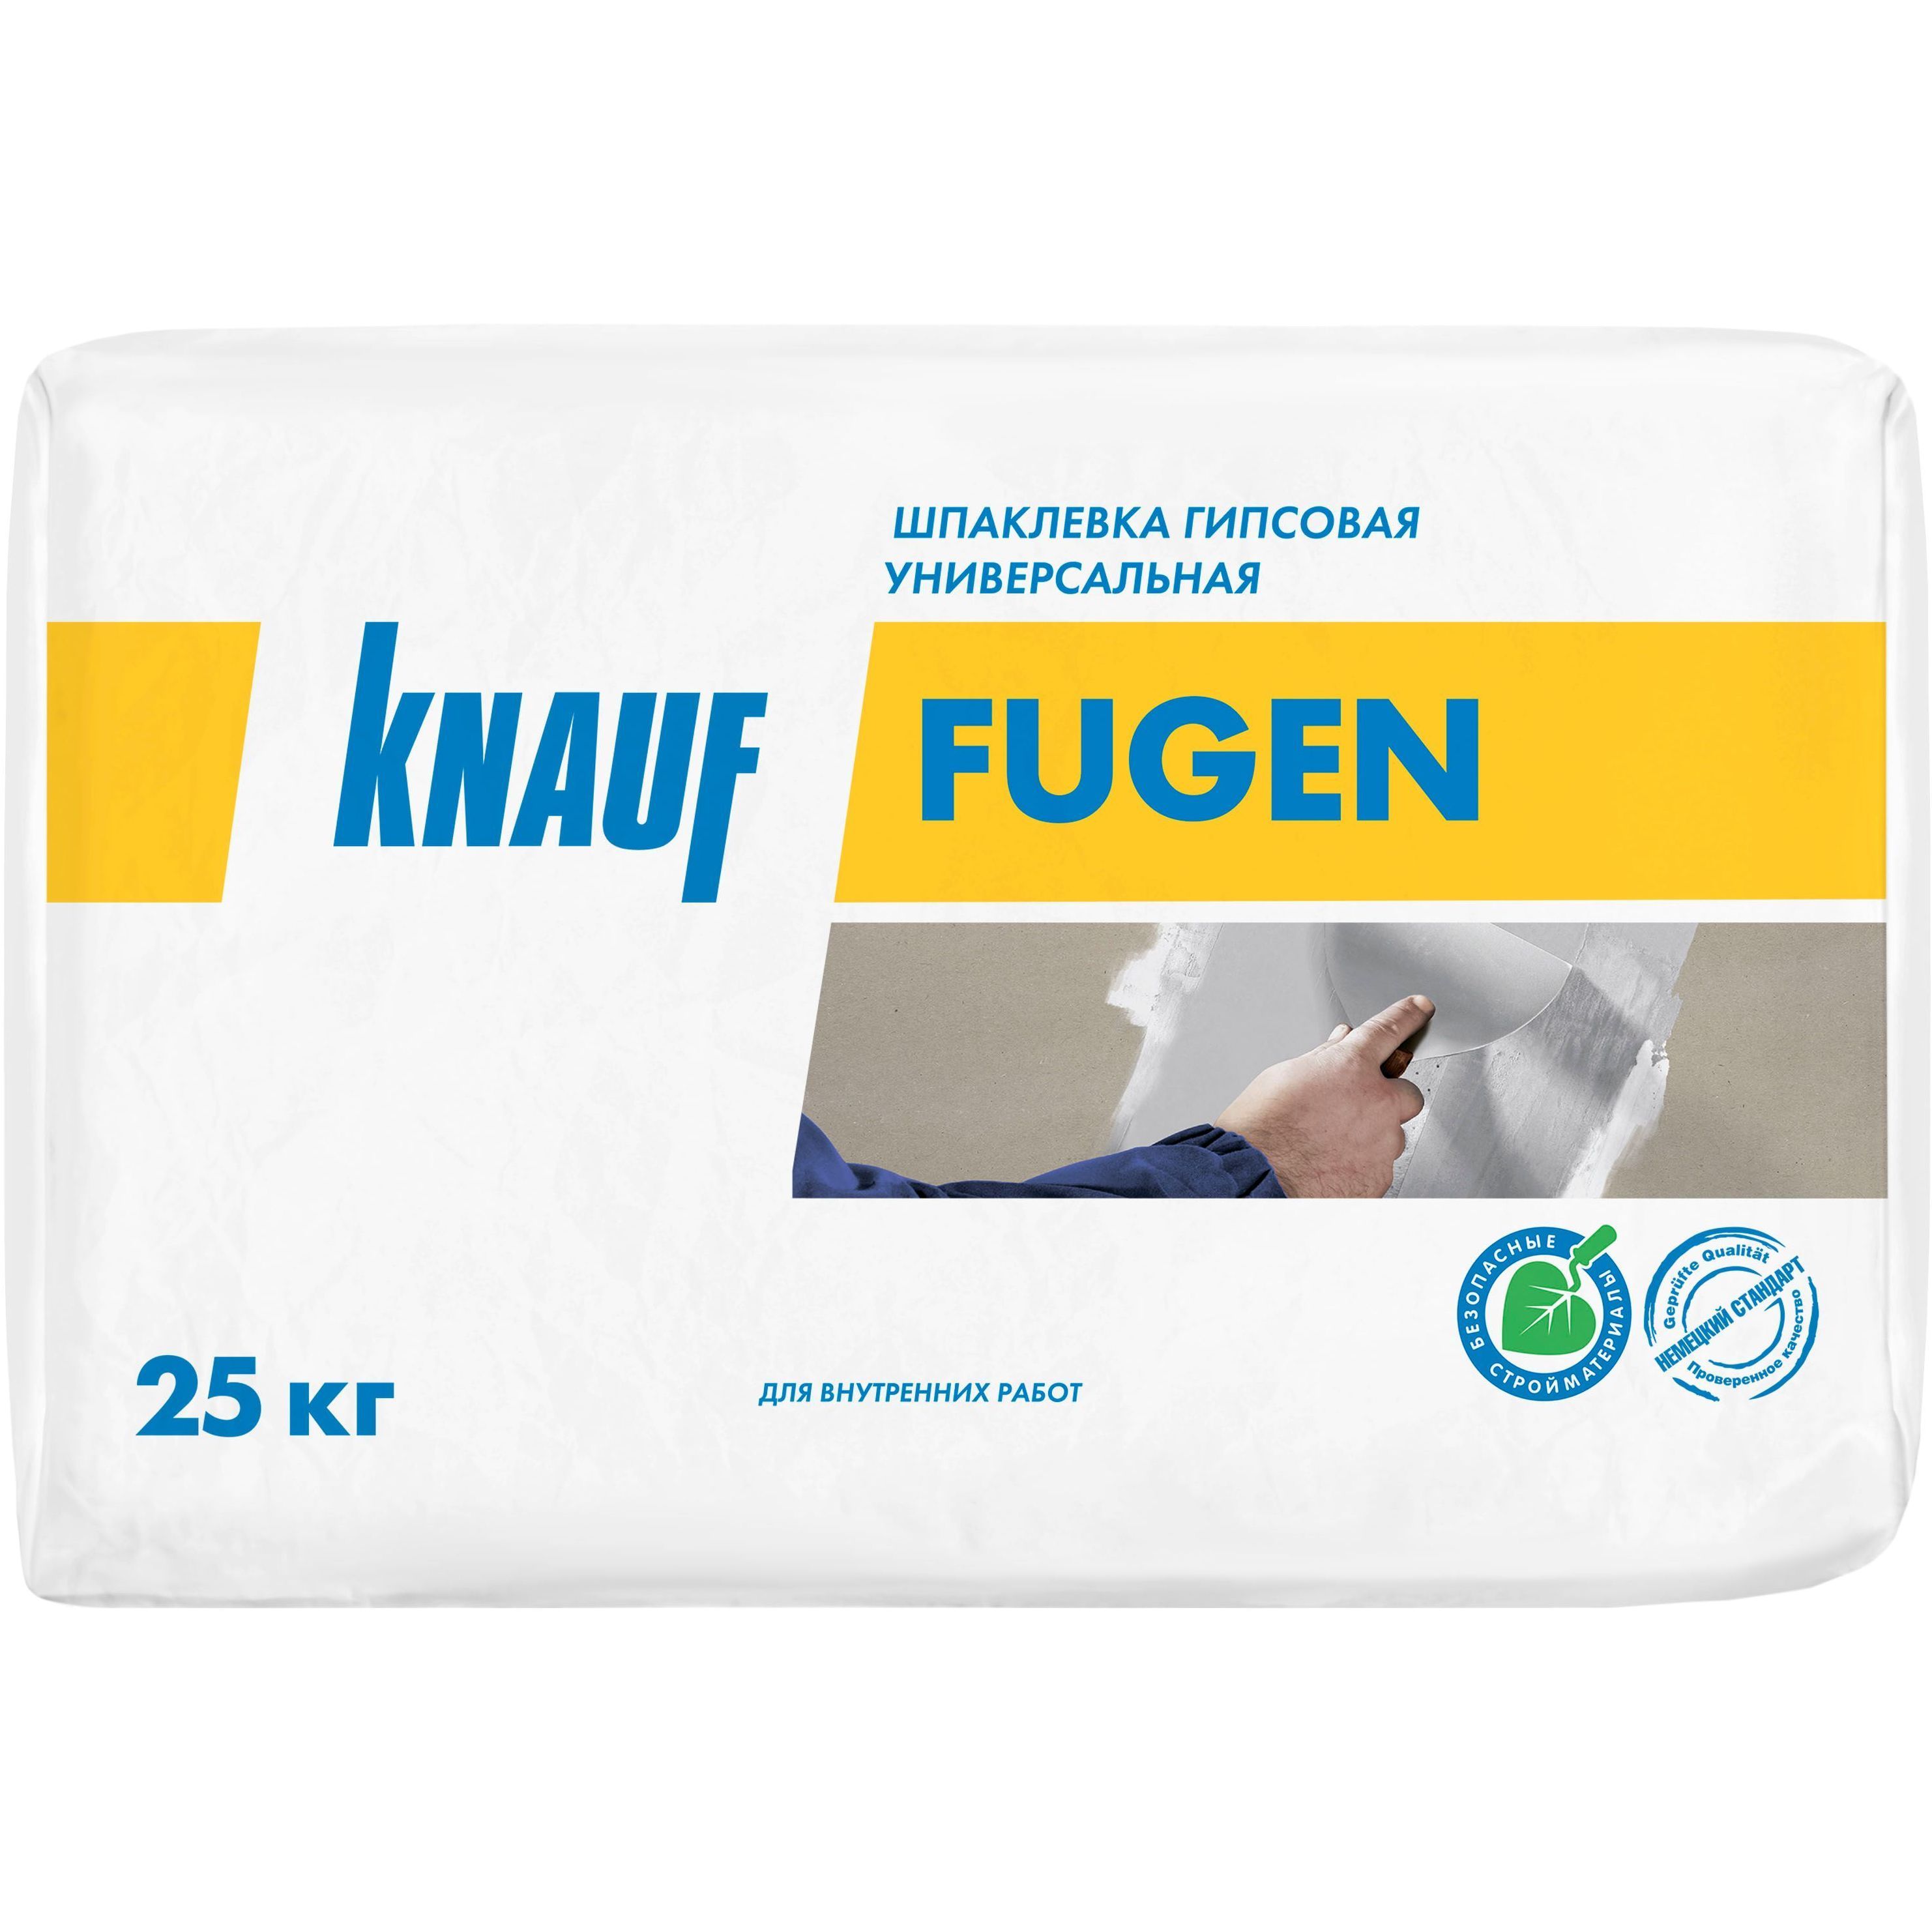 Шпаклевка гипсовая универсальная КНАУФ Фуген 25 кг. (40)